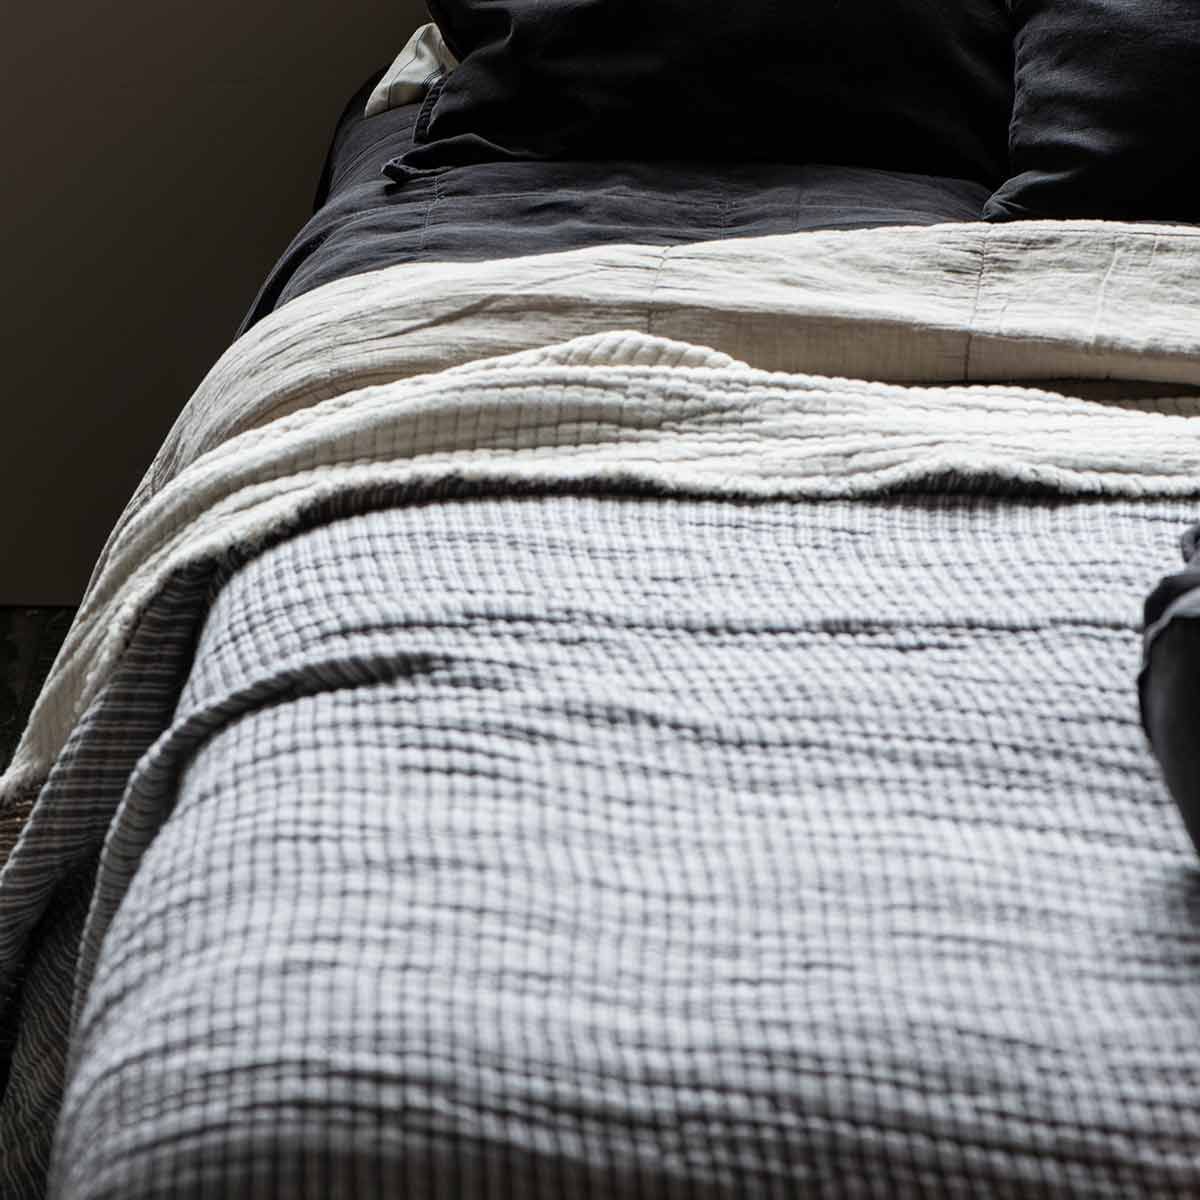 Élégant couvre-lit XL en coton écru agrémenté de rayures délicates en gris clair